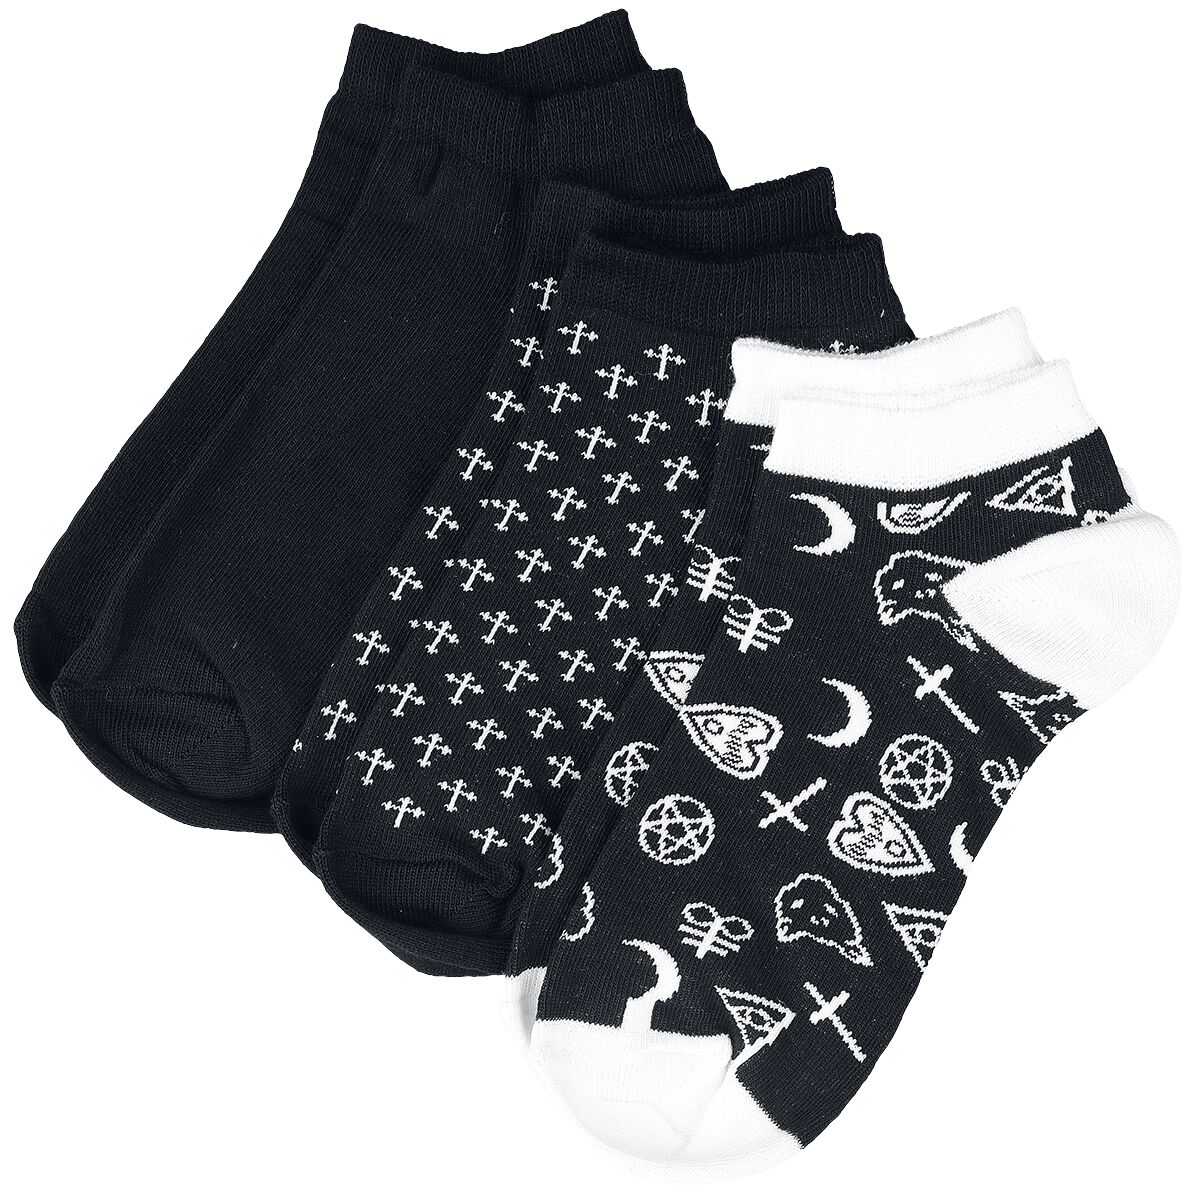 Dreierpack Socken mit Kreuz und Pentagramm Motiven Socken schwarz von Gothicana by EMP